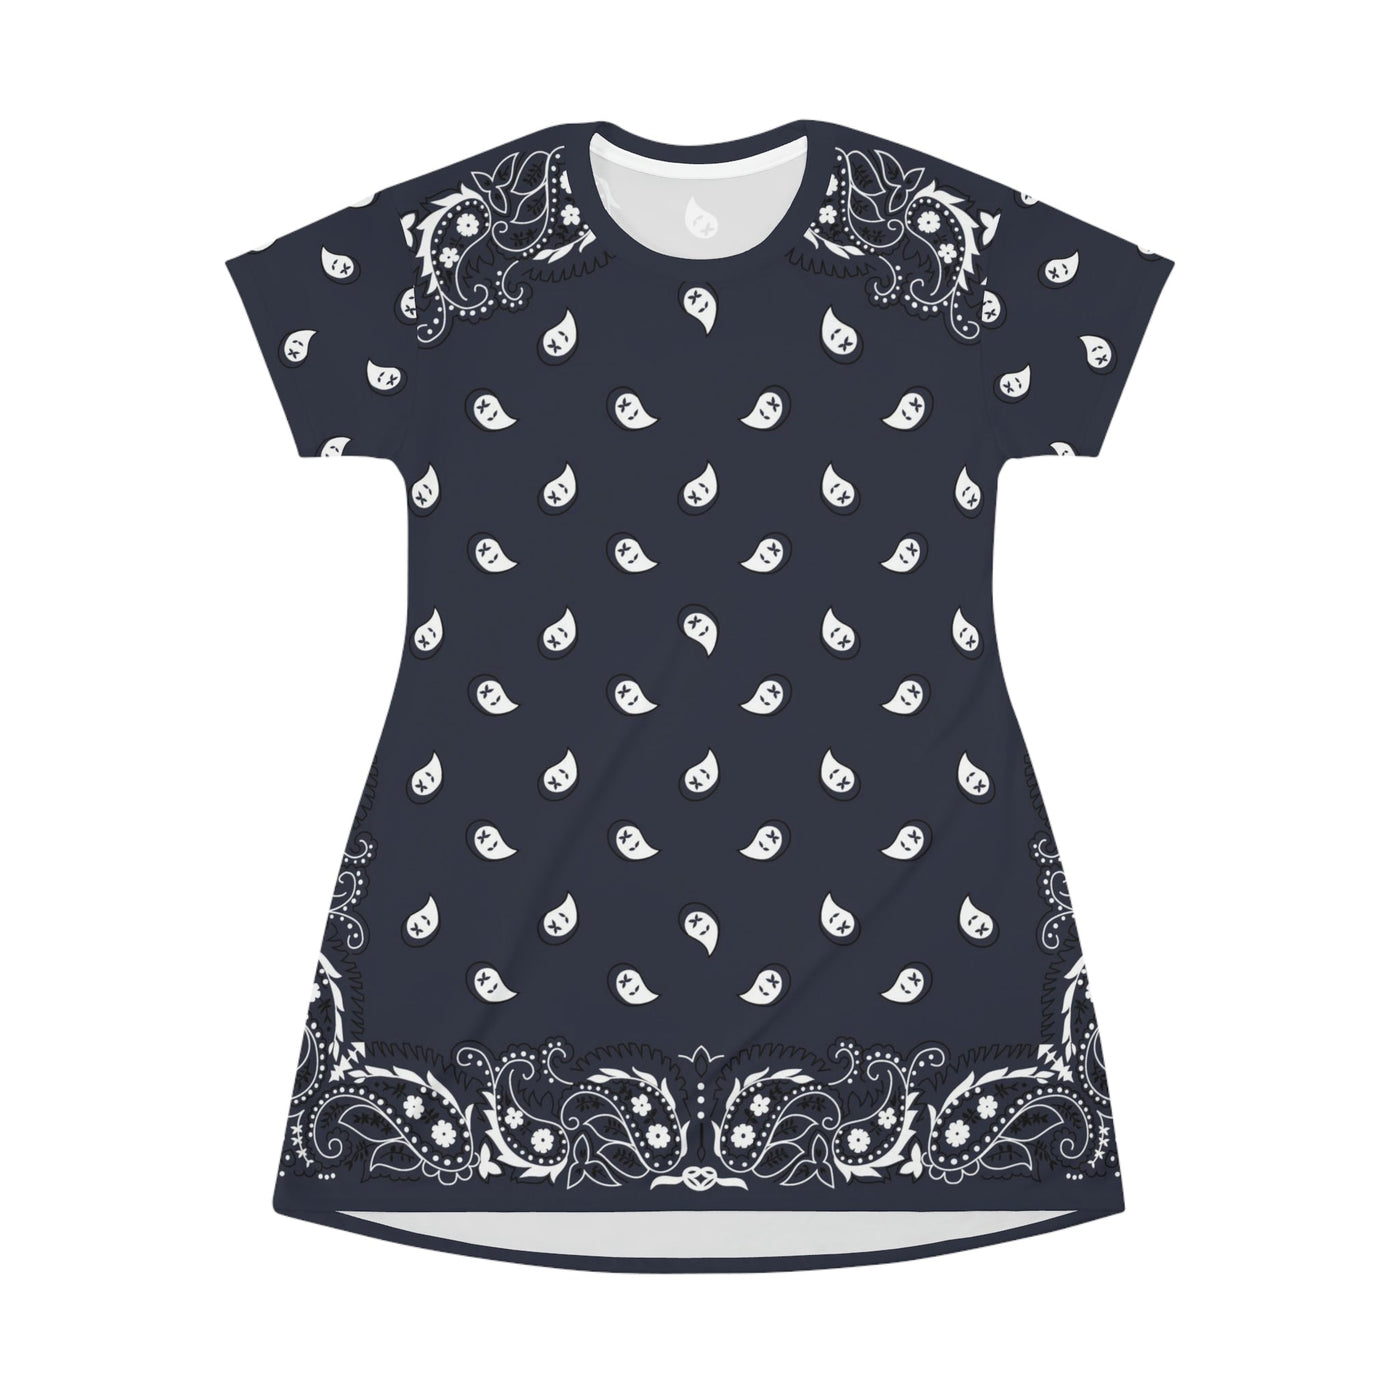 Navy Blue Bandana Pattern | Fashion T-Shirt Dress